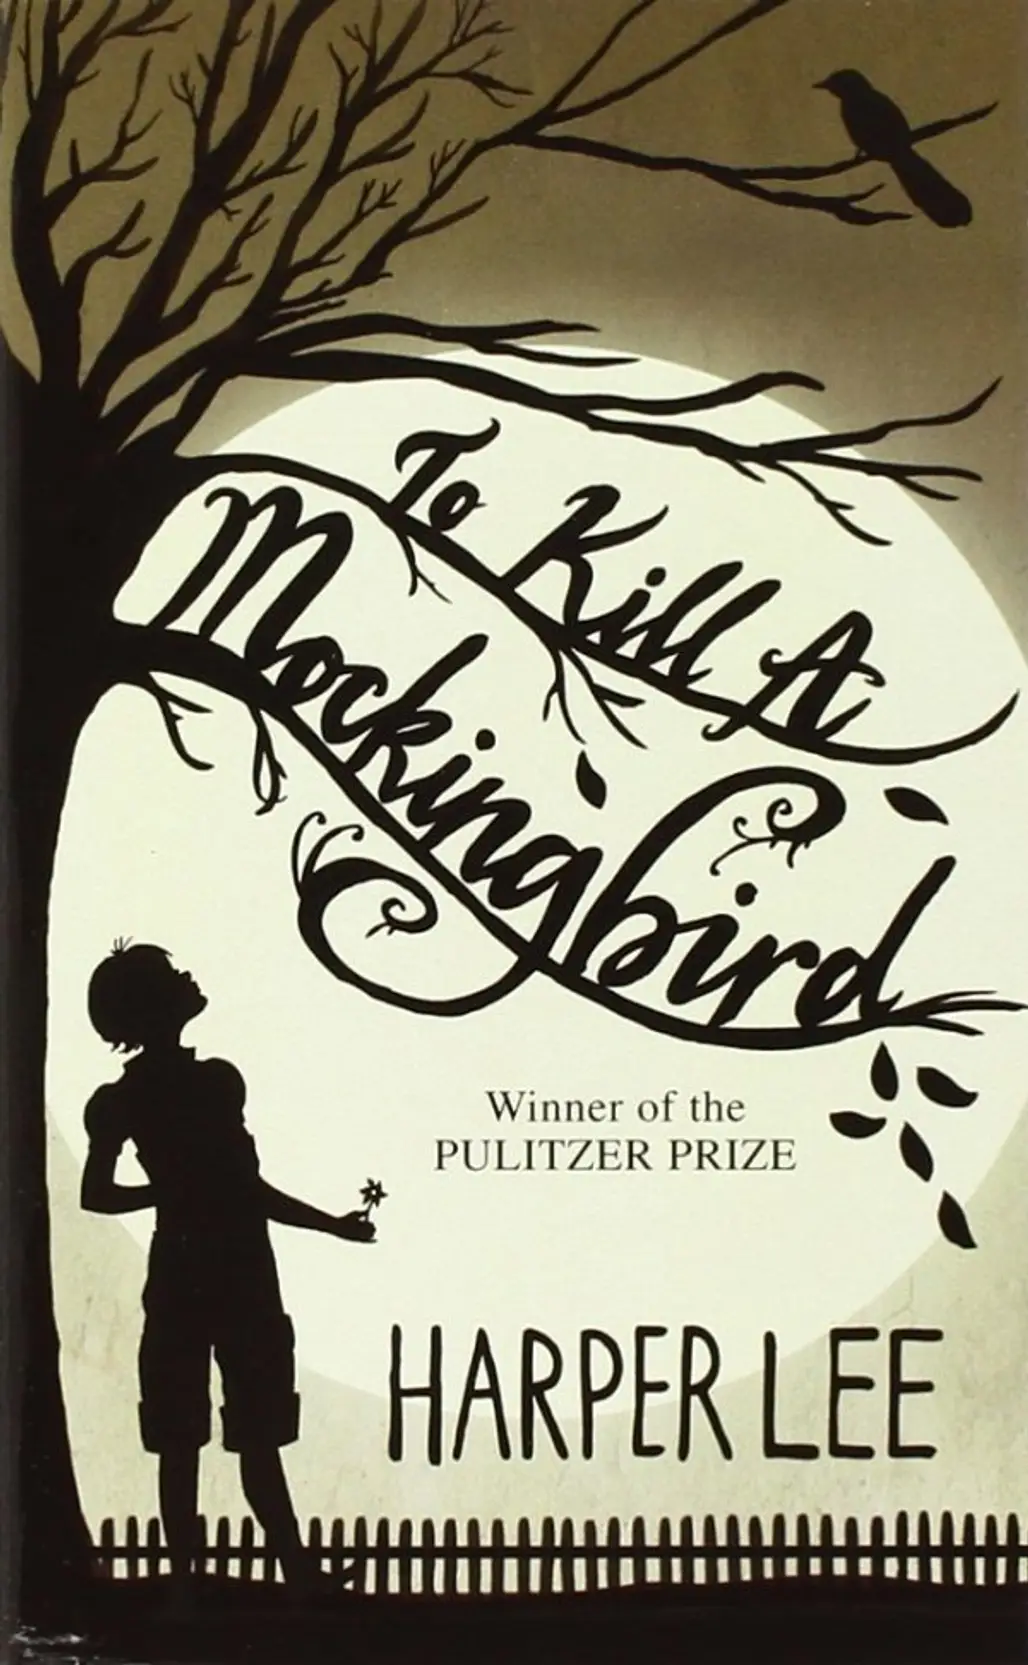 To Kill a Mockingbird – Harper Lee